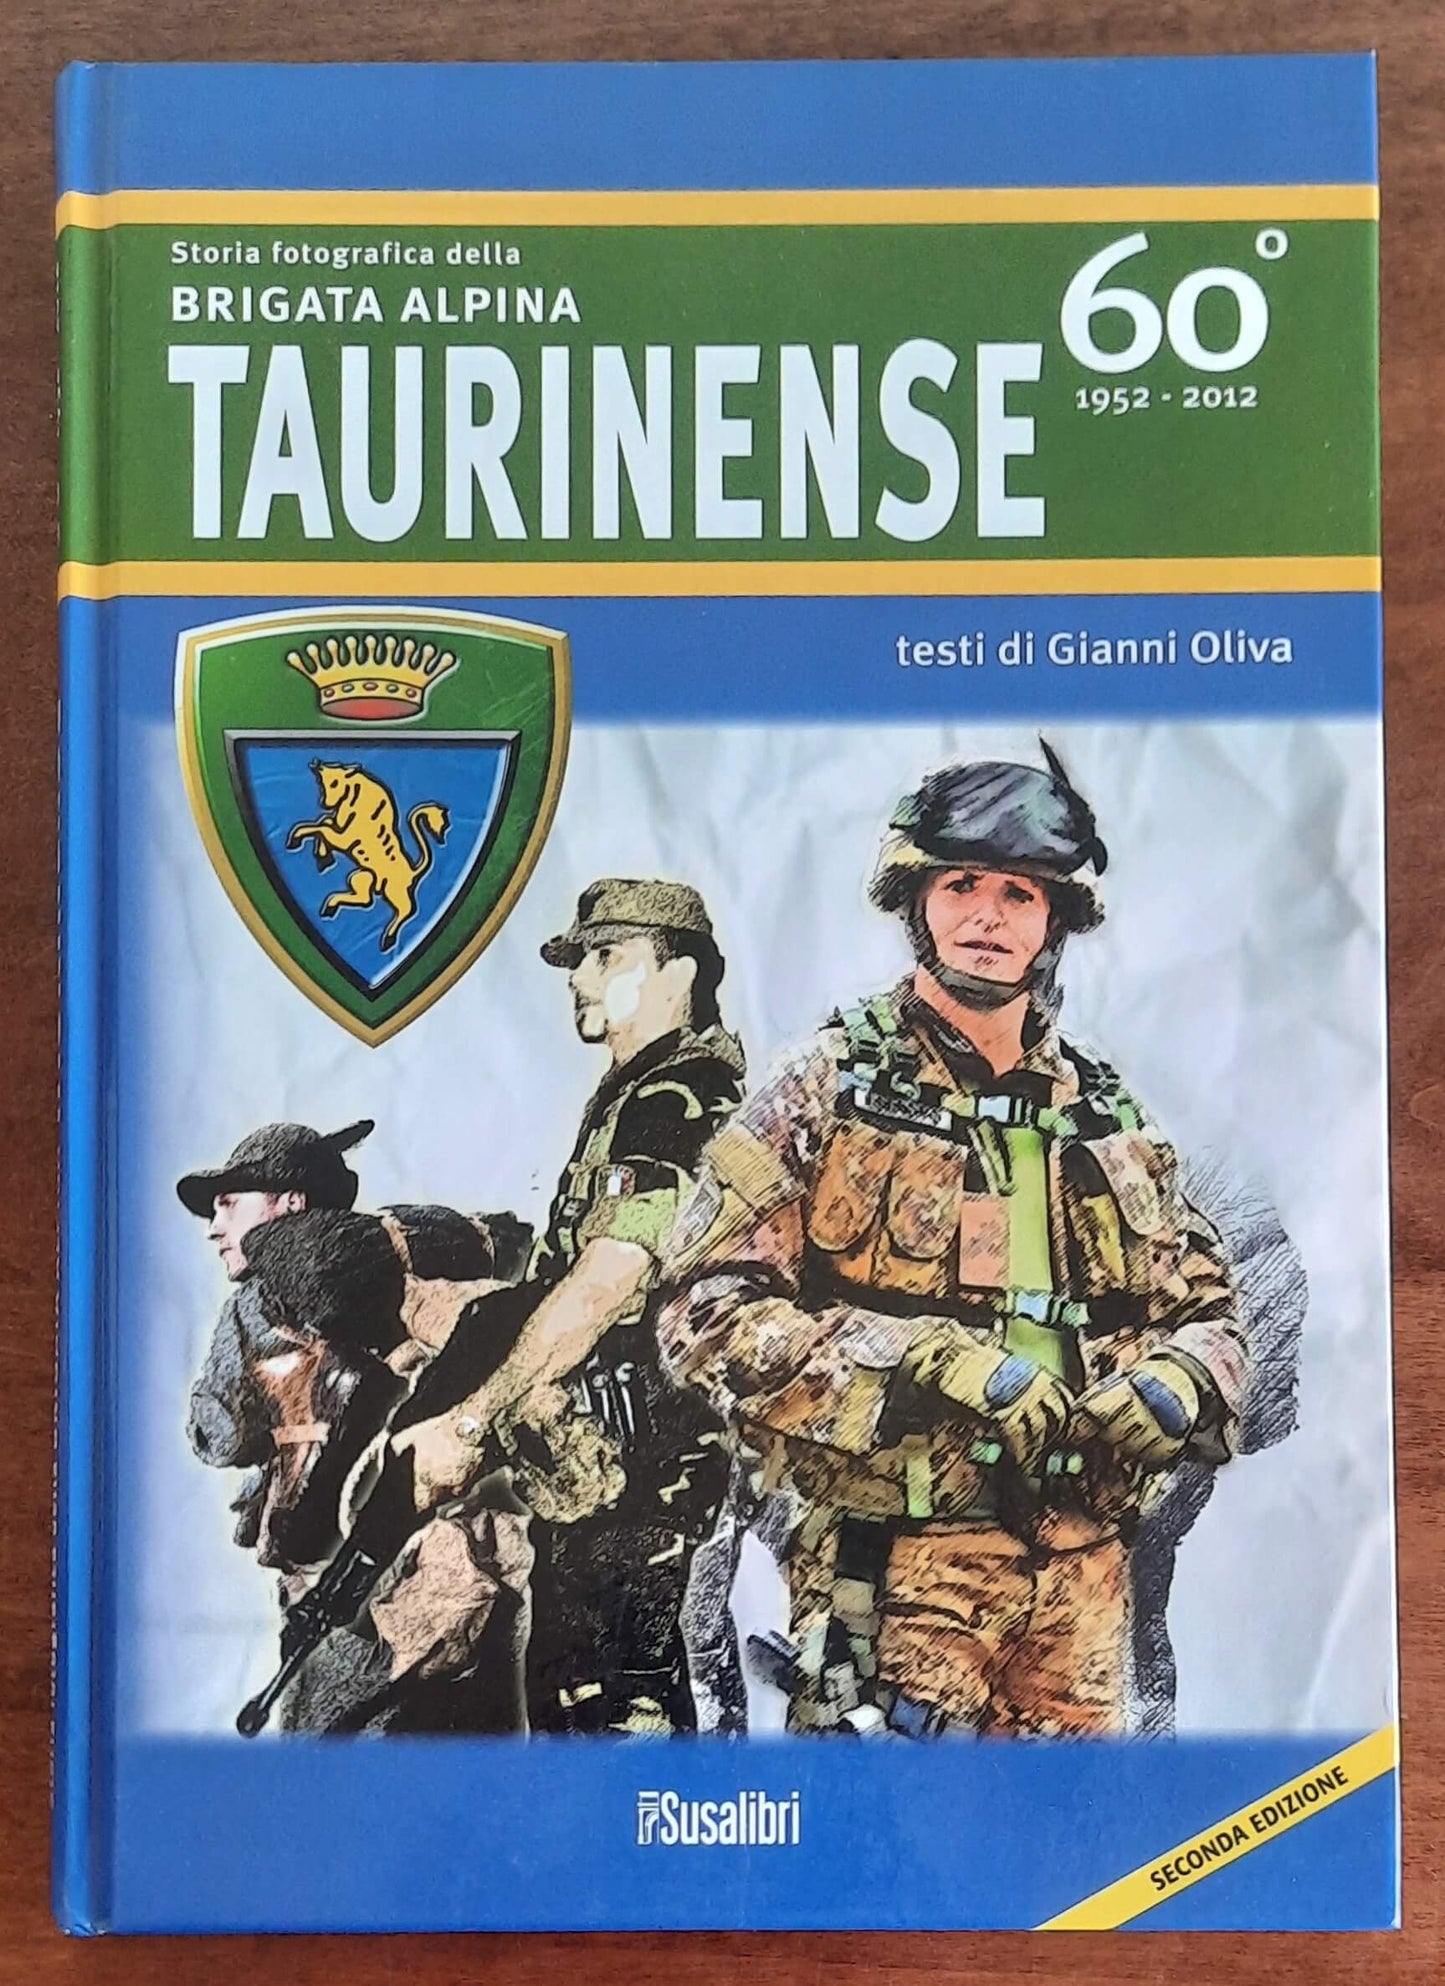 Storia fotografica della Brigata alpina taurinense. 60° 1952-2012